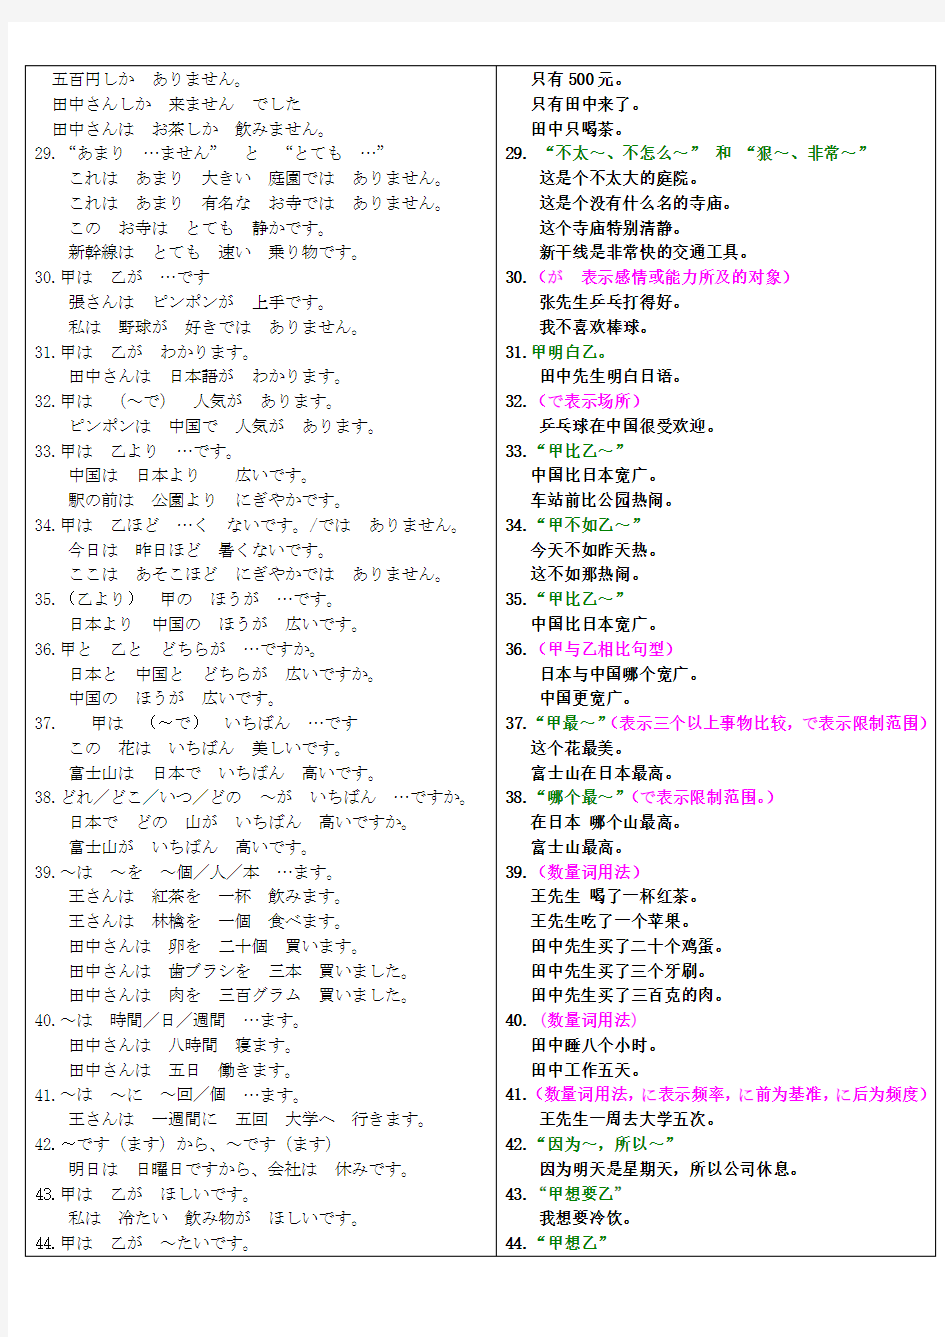 日语四级语法总结